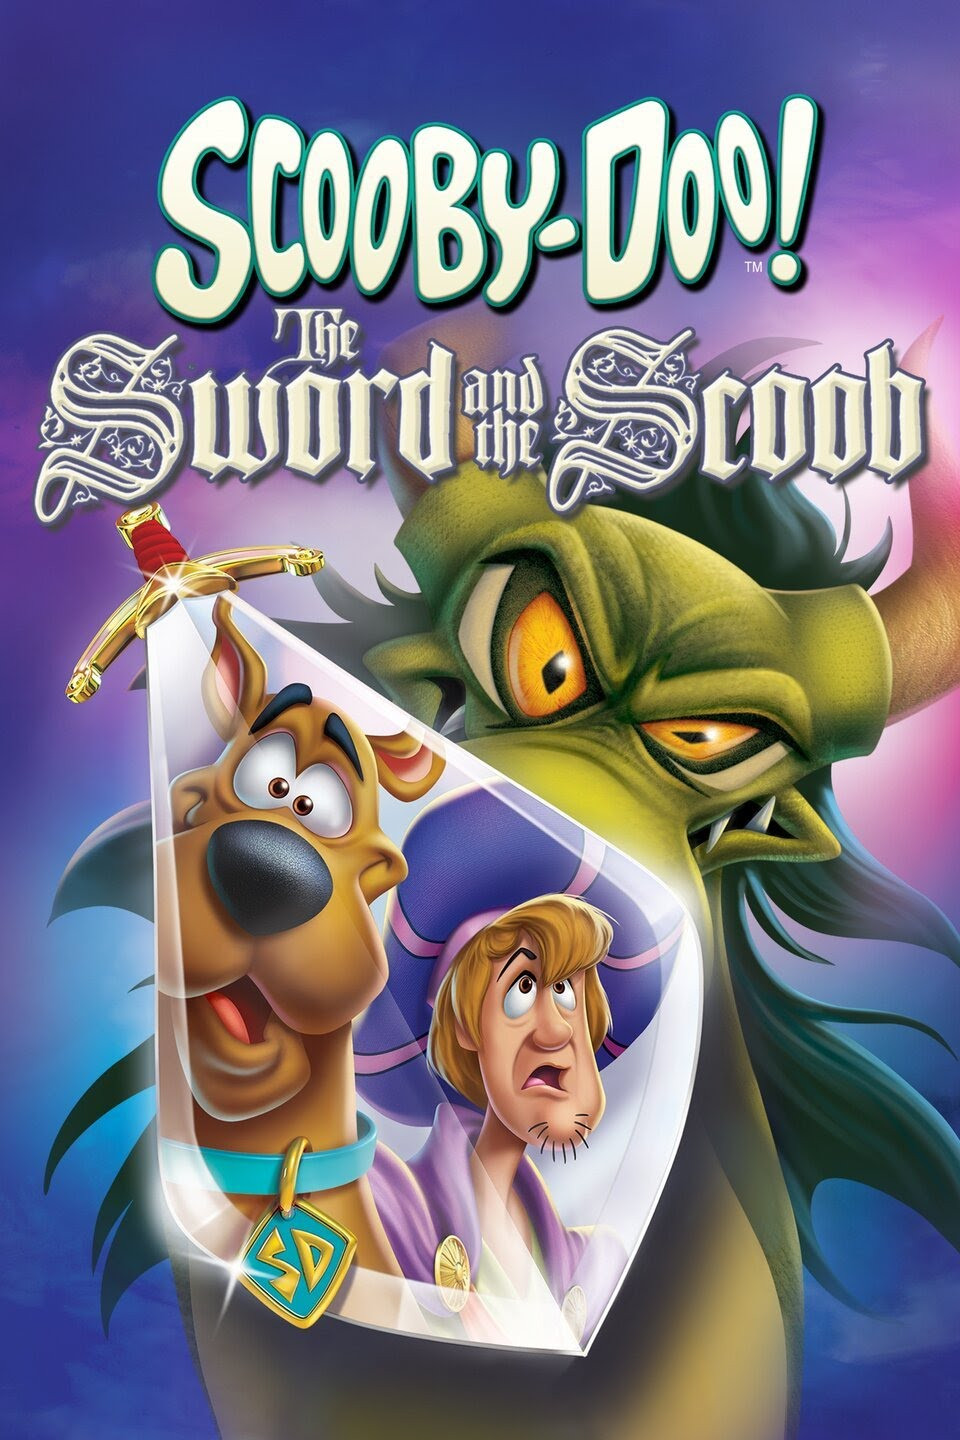 فيلم ScoobyDoo The Sword and the Scoob 2021 مترجم اون لاين